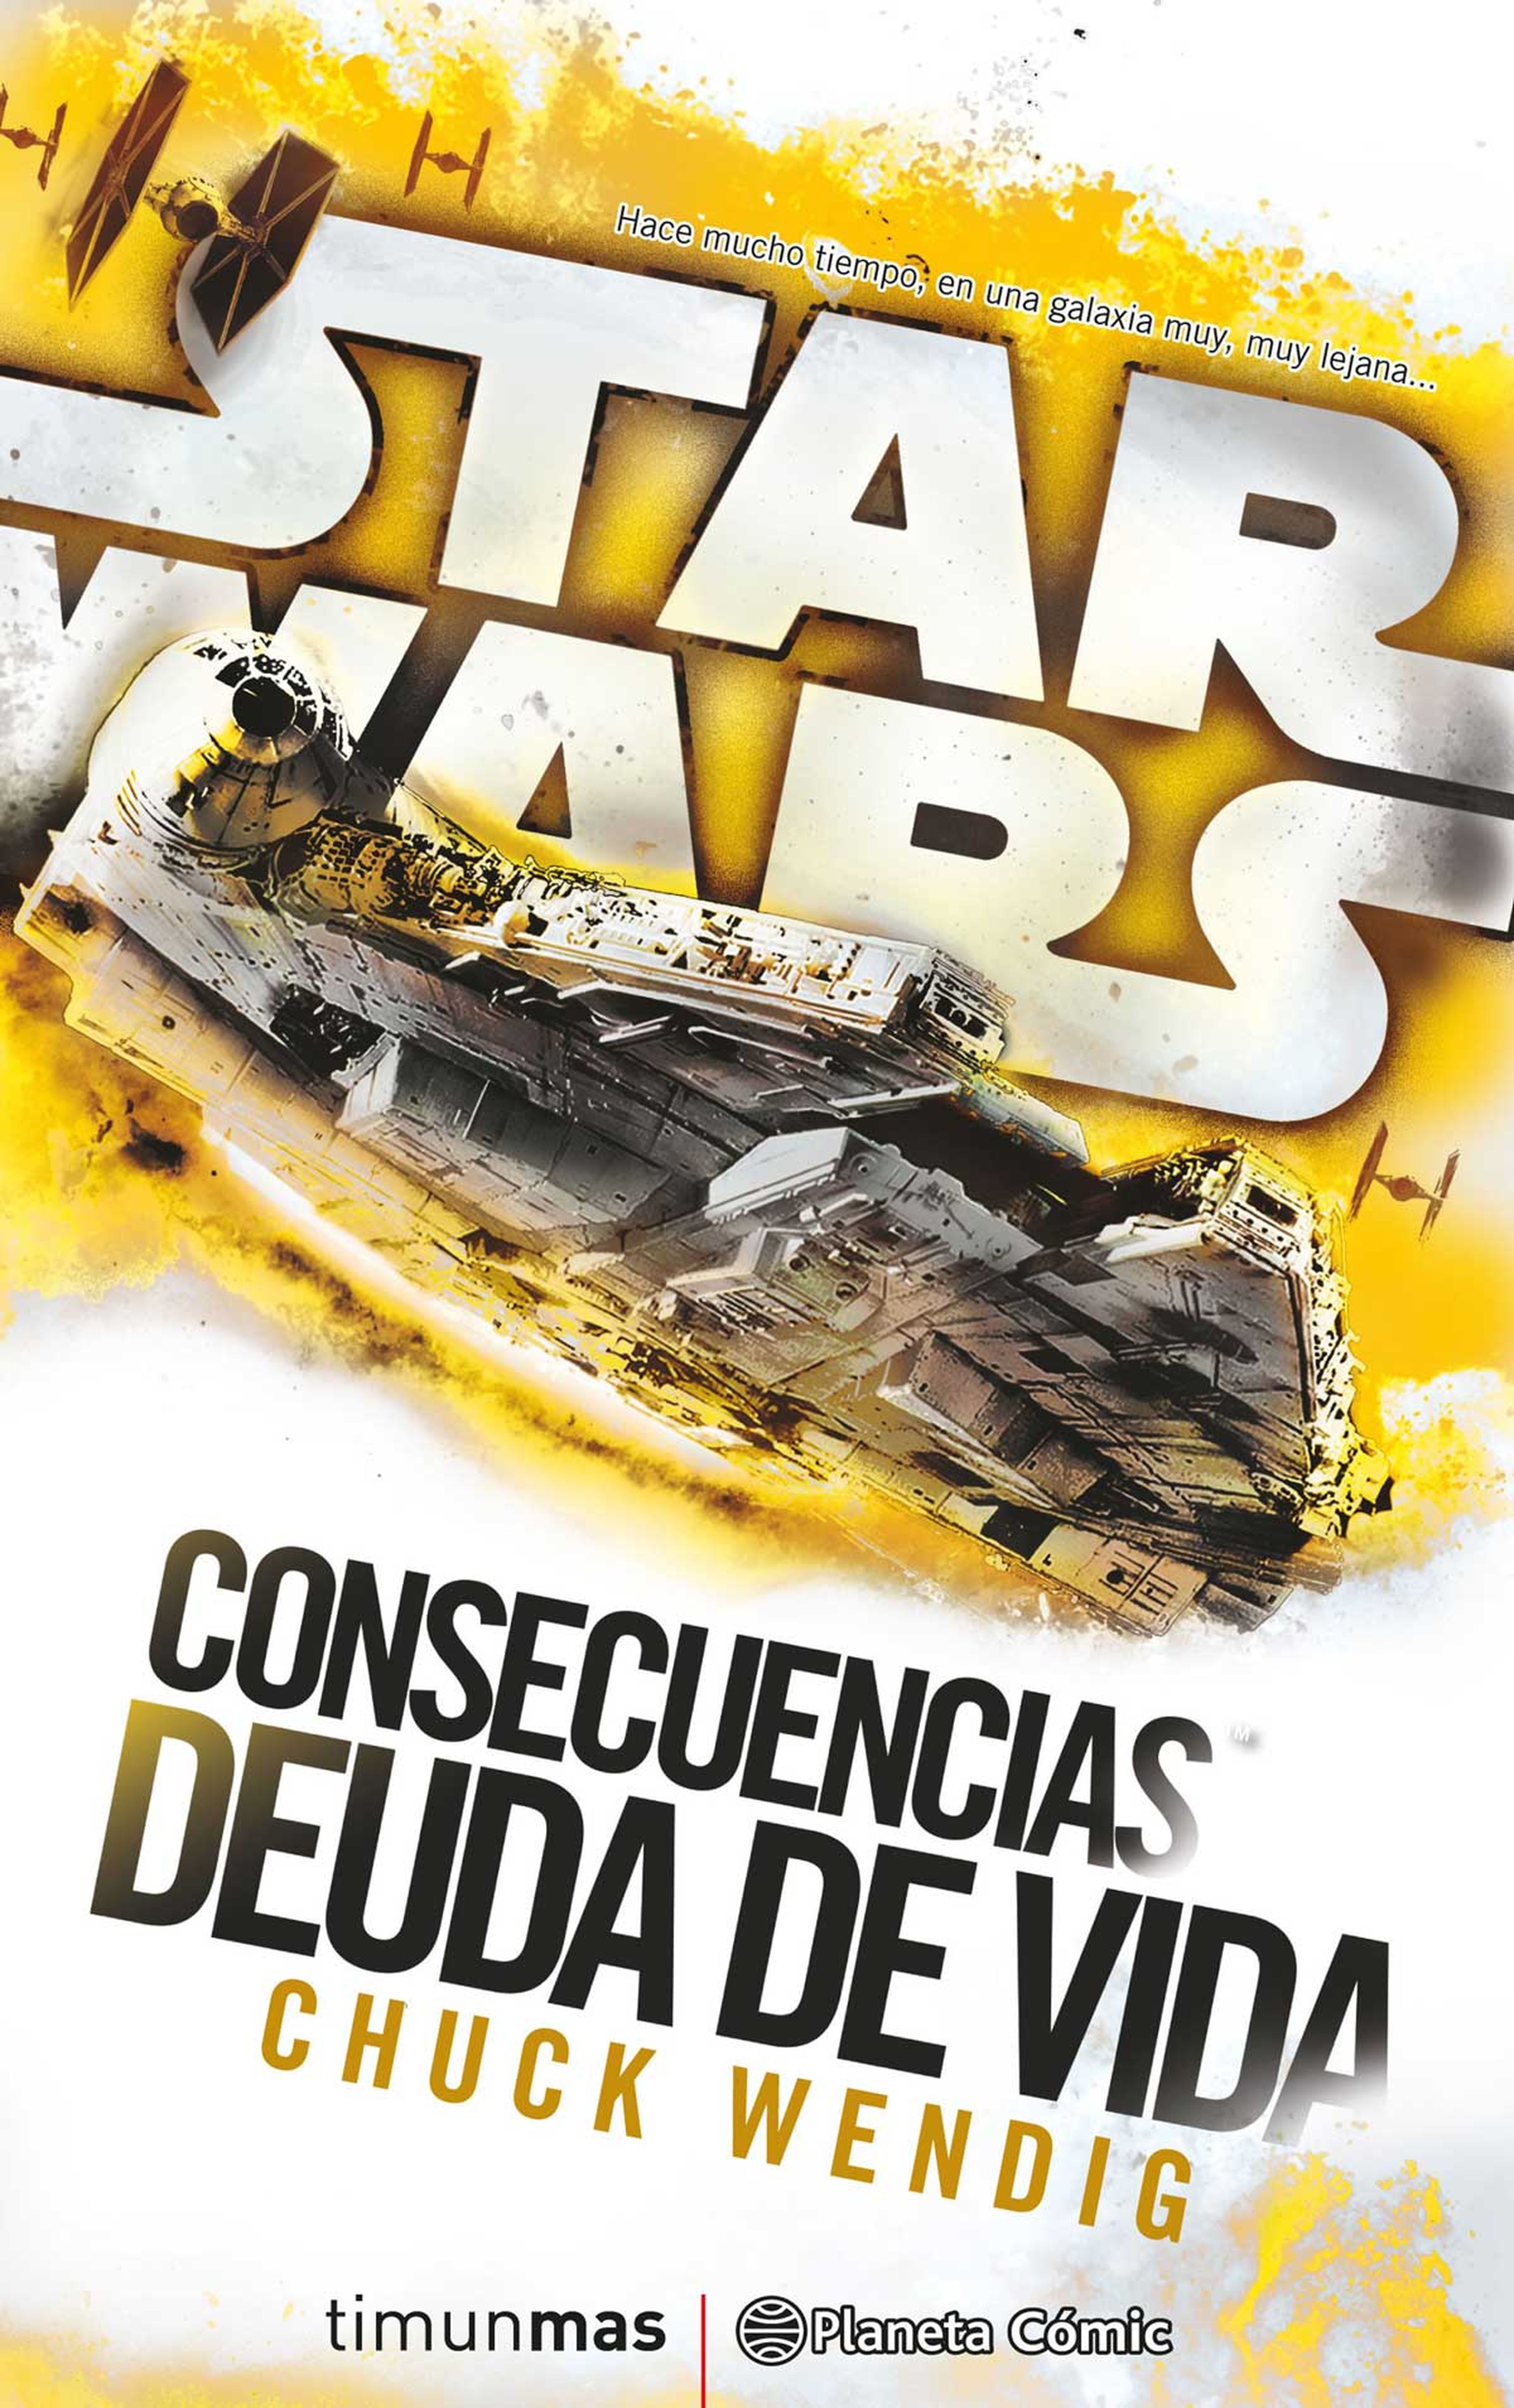 Star Wars Consecuencias: Deuda de vida